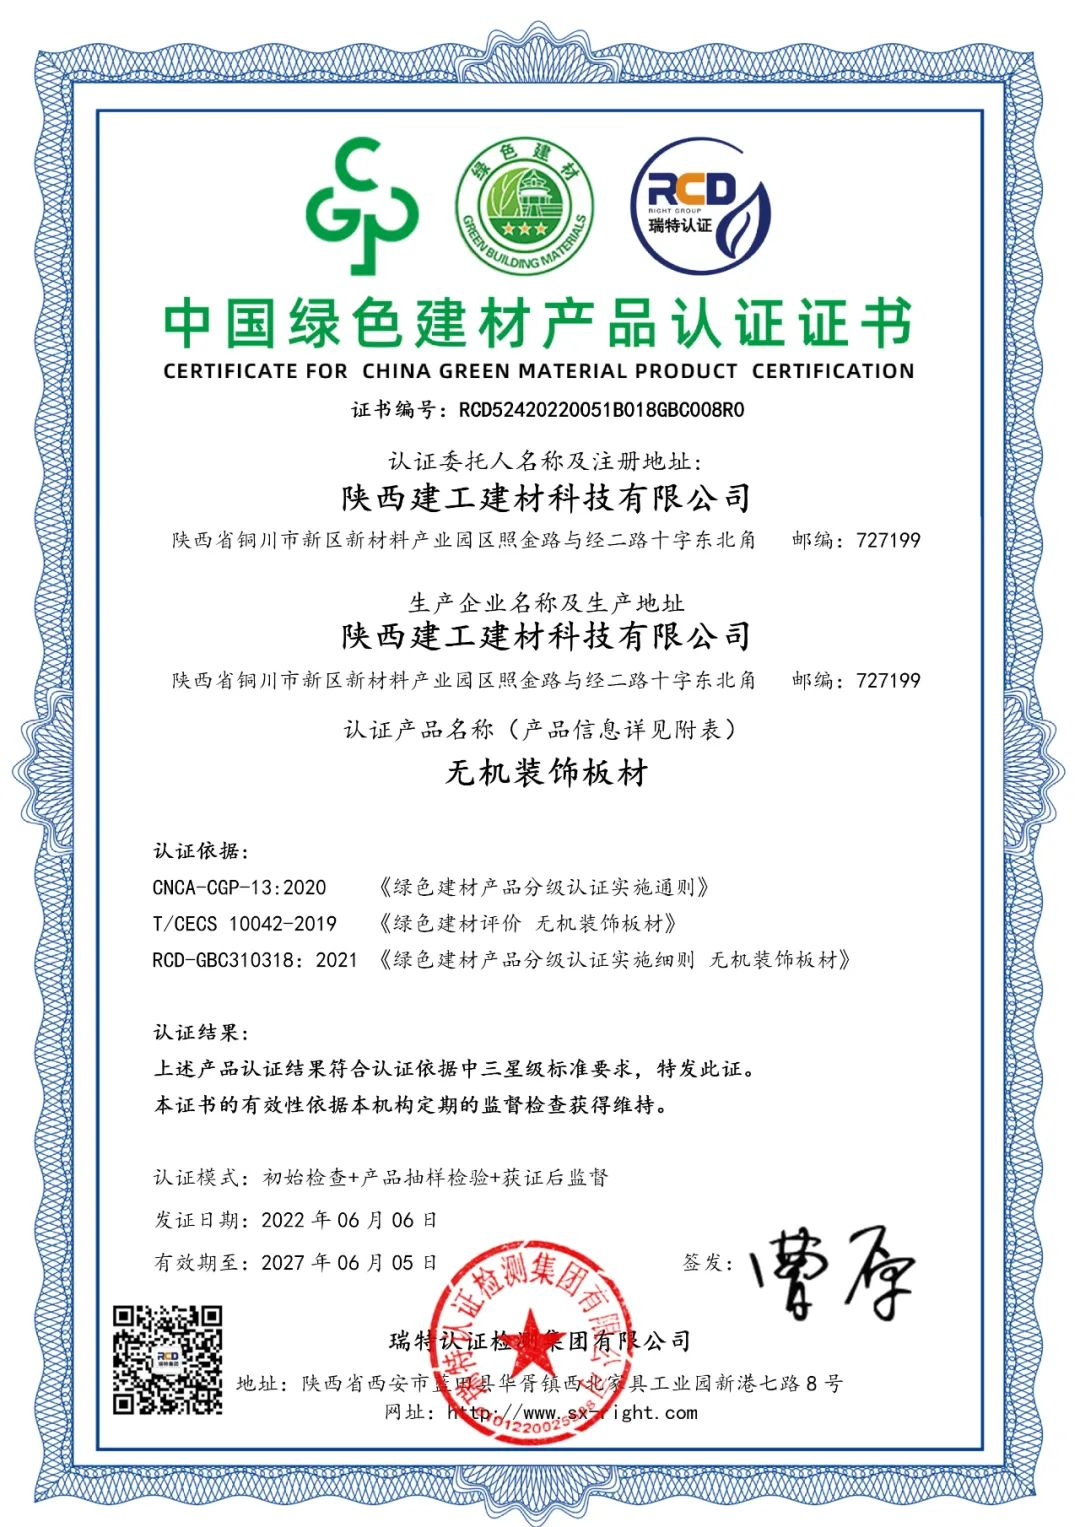 m6体育（中国）科技有限公司官网建材科技公司产品成功通过中国绿色建材产品最高级别认证